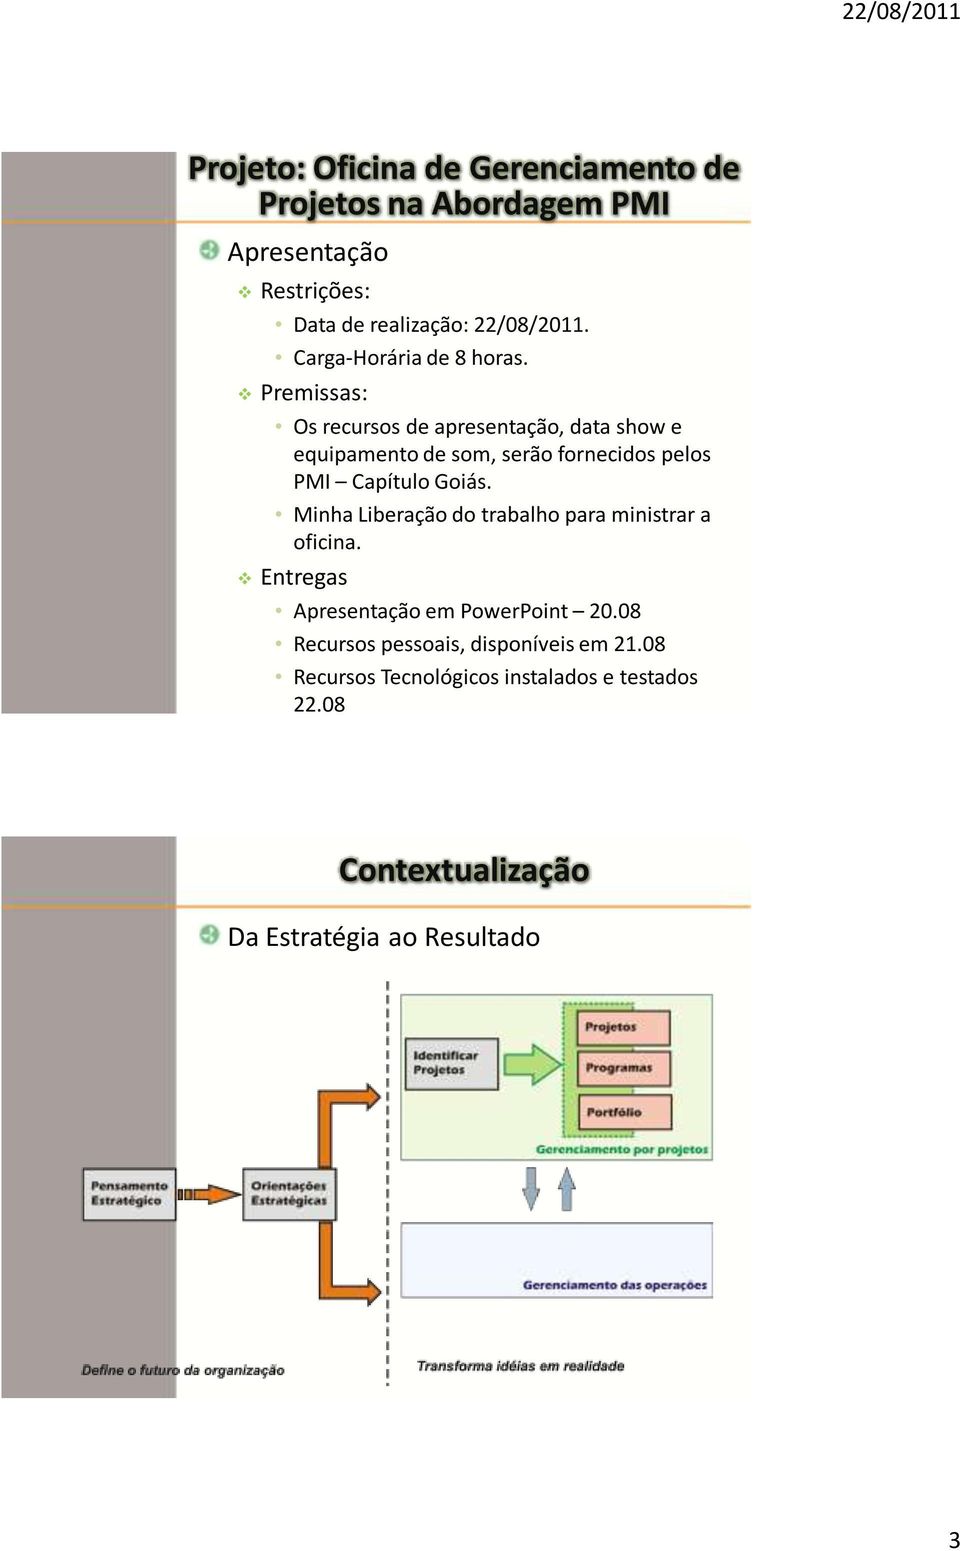 Premissas: Os recursos de apresentação, data show e equipamento de som, serão fornecidos pelos PMI Capítulo Goiás.